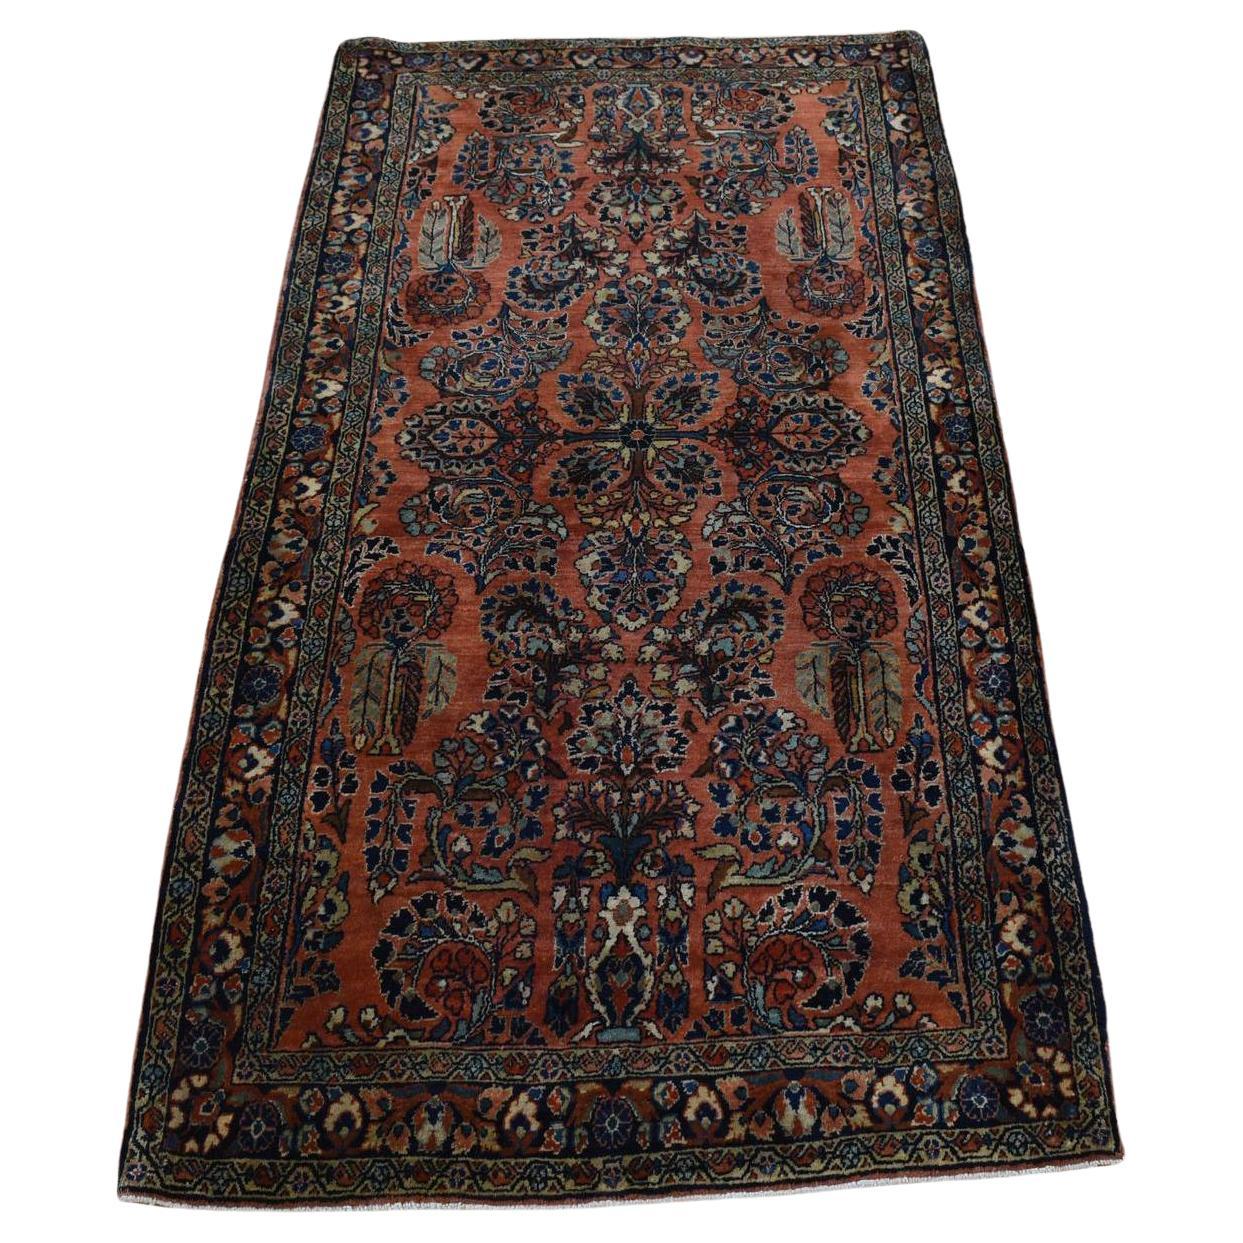 Roter antiker persischer Sarouk-Teppich in Rot, voller Flor, sauber und weich, handgeknüpft, 2'6"x5' im Angebot